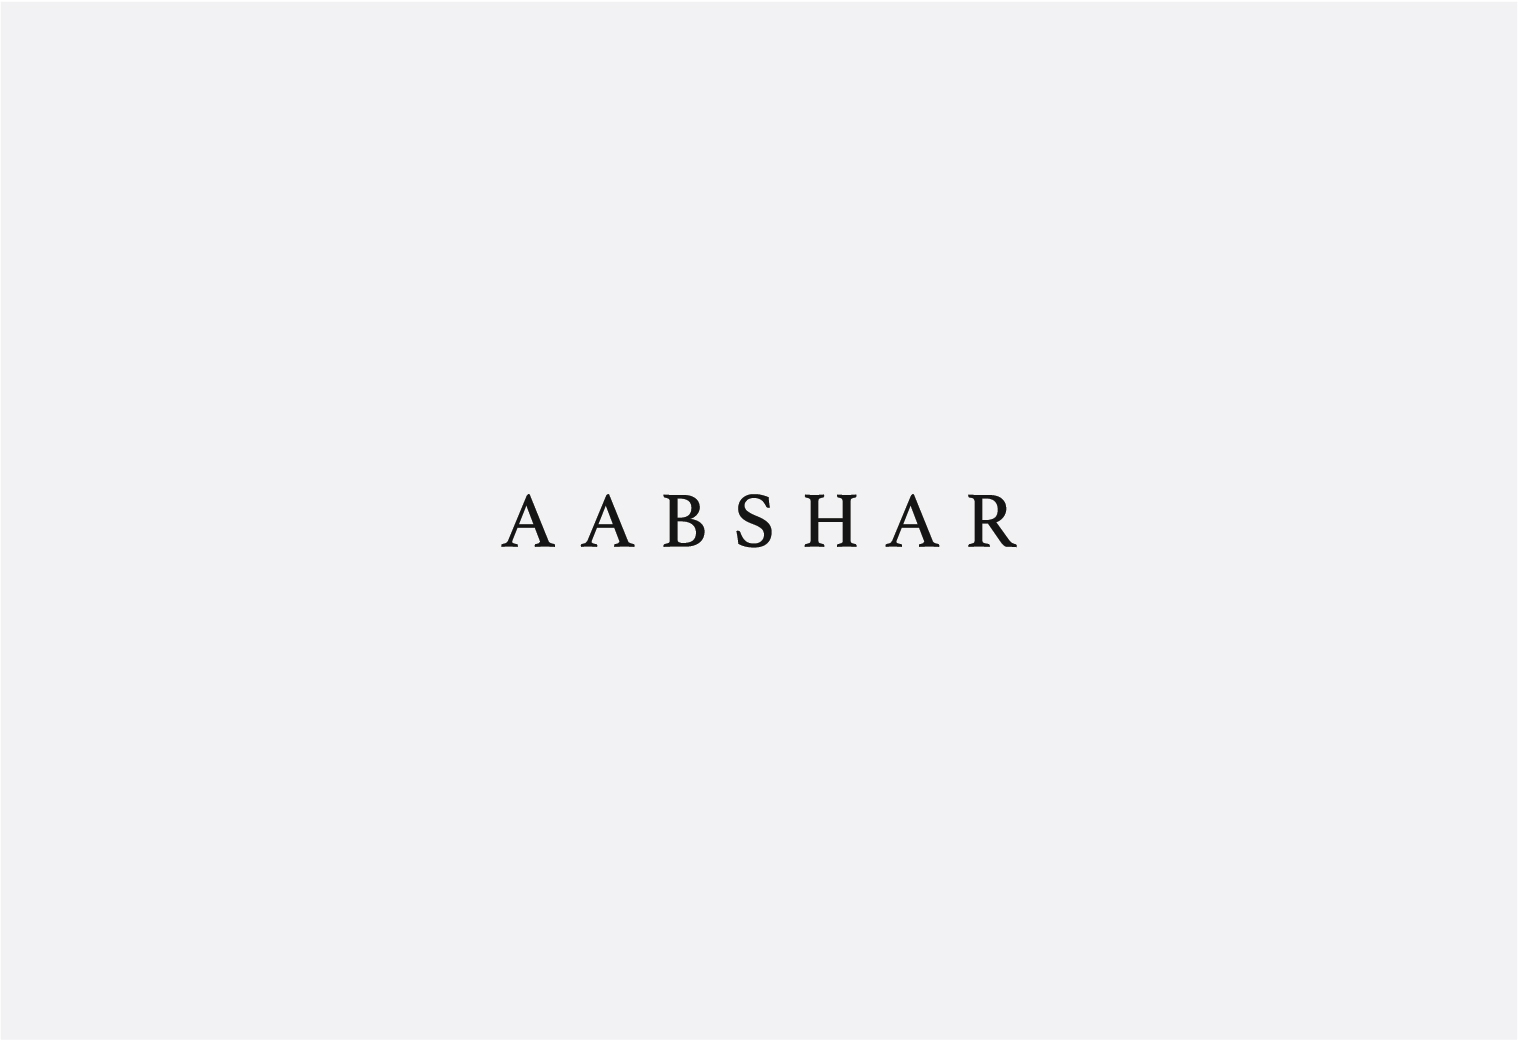 Aabshar